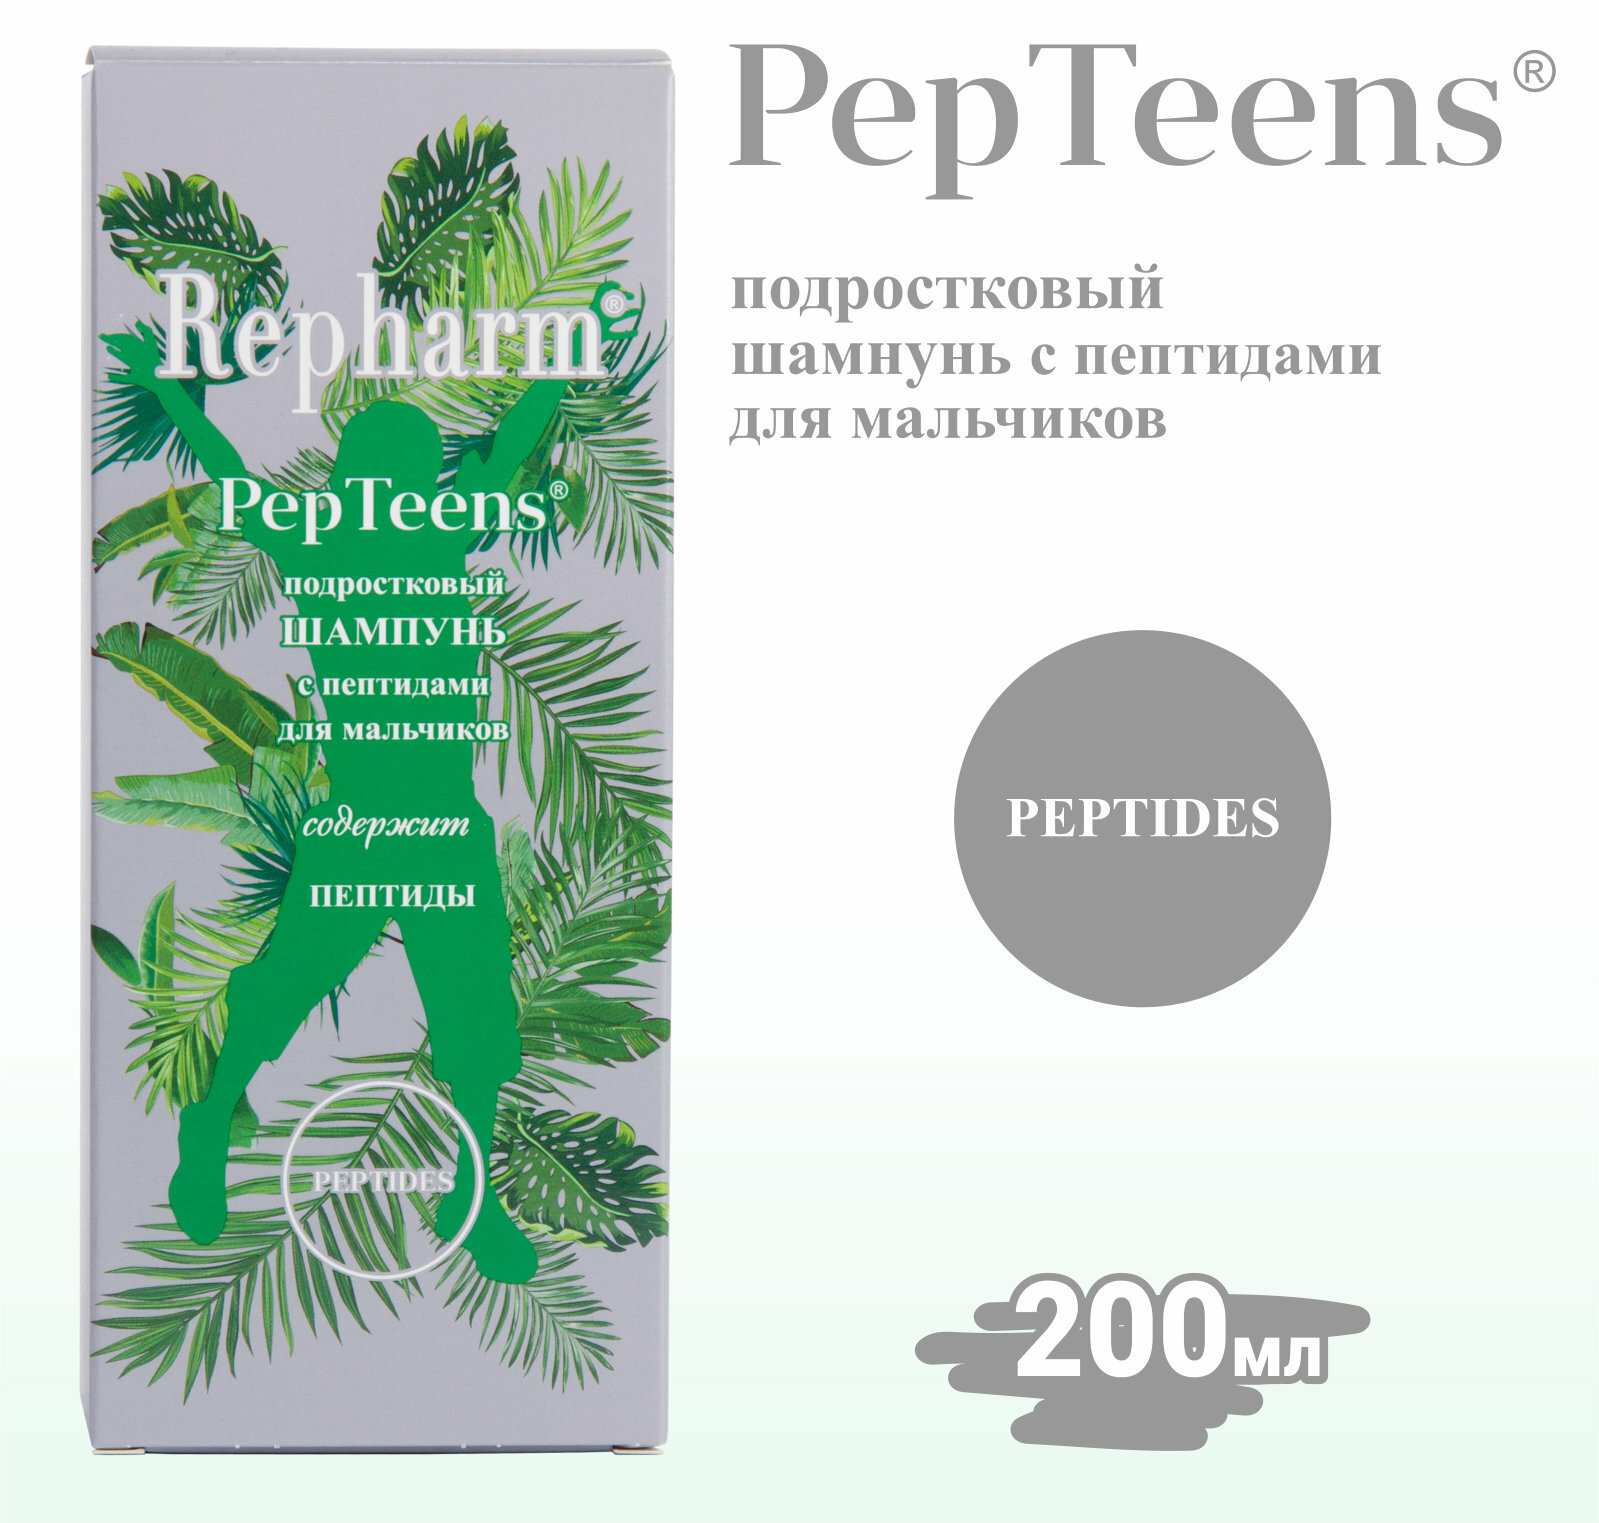 Шампунь для мальчиков Repharm PepTeens ® (пептинс) подростковый с пептидами, 200 мл